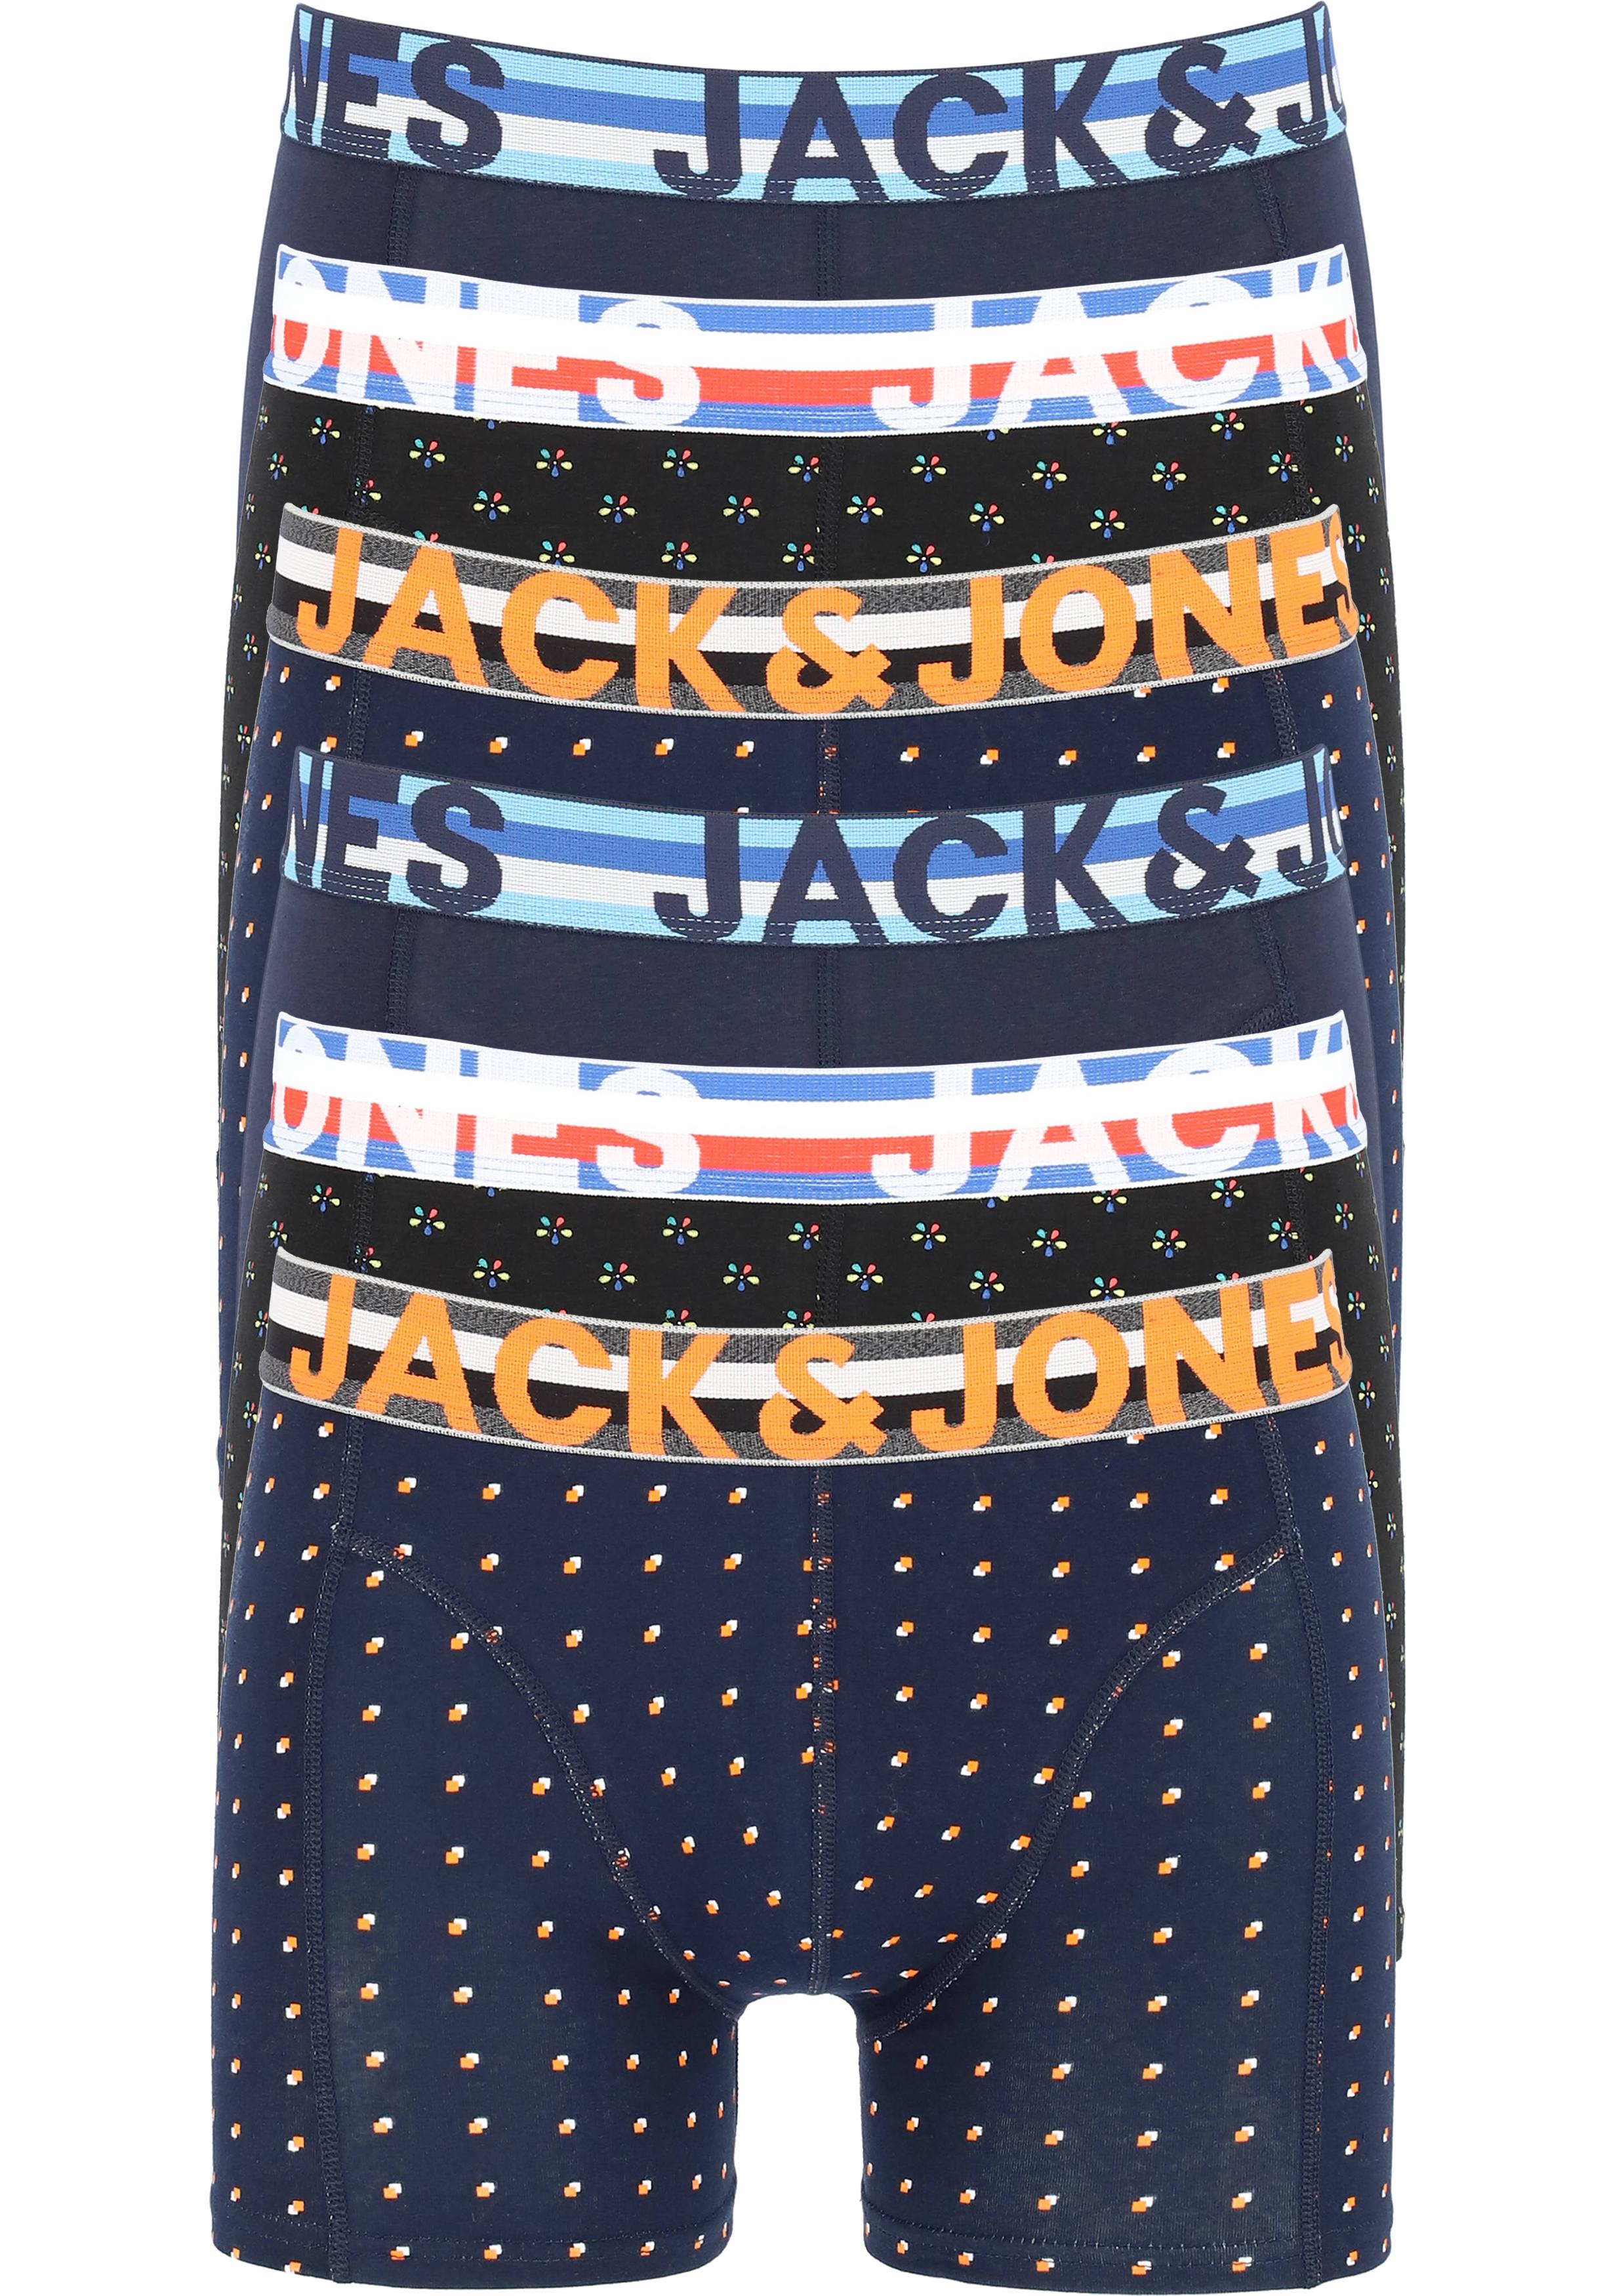 JACK & JONES boxers Jachenrik trunks (6-pack), blauw uni en dessin